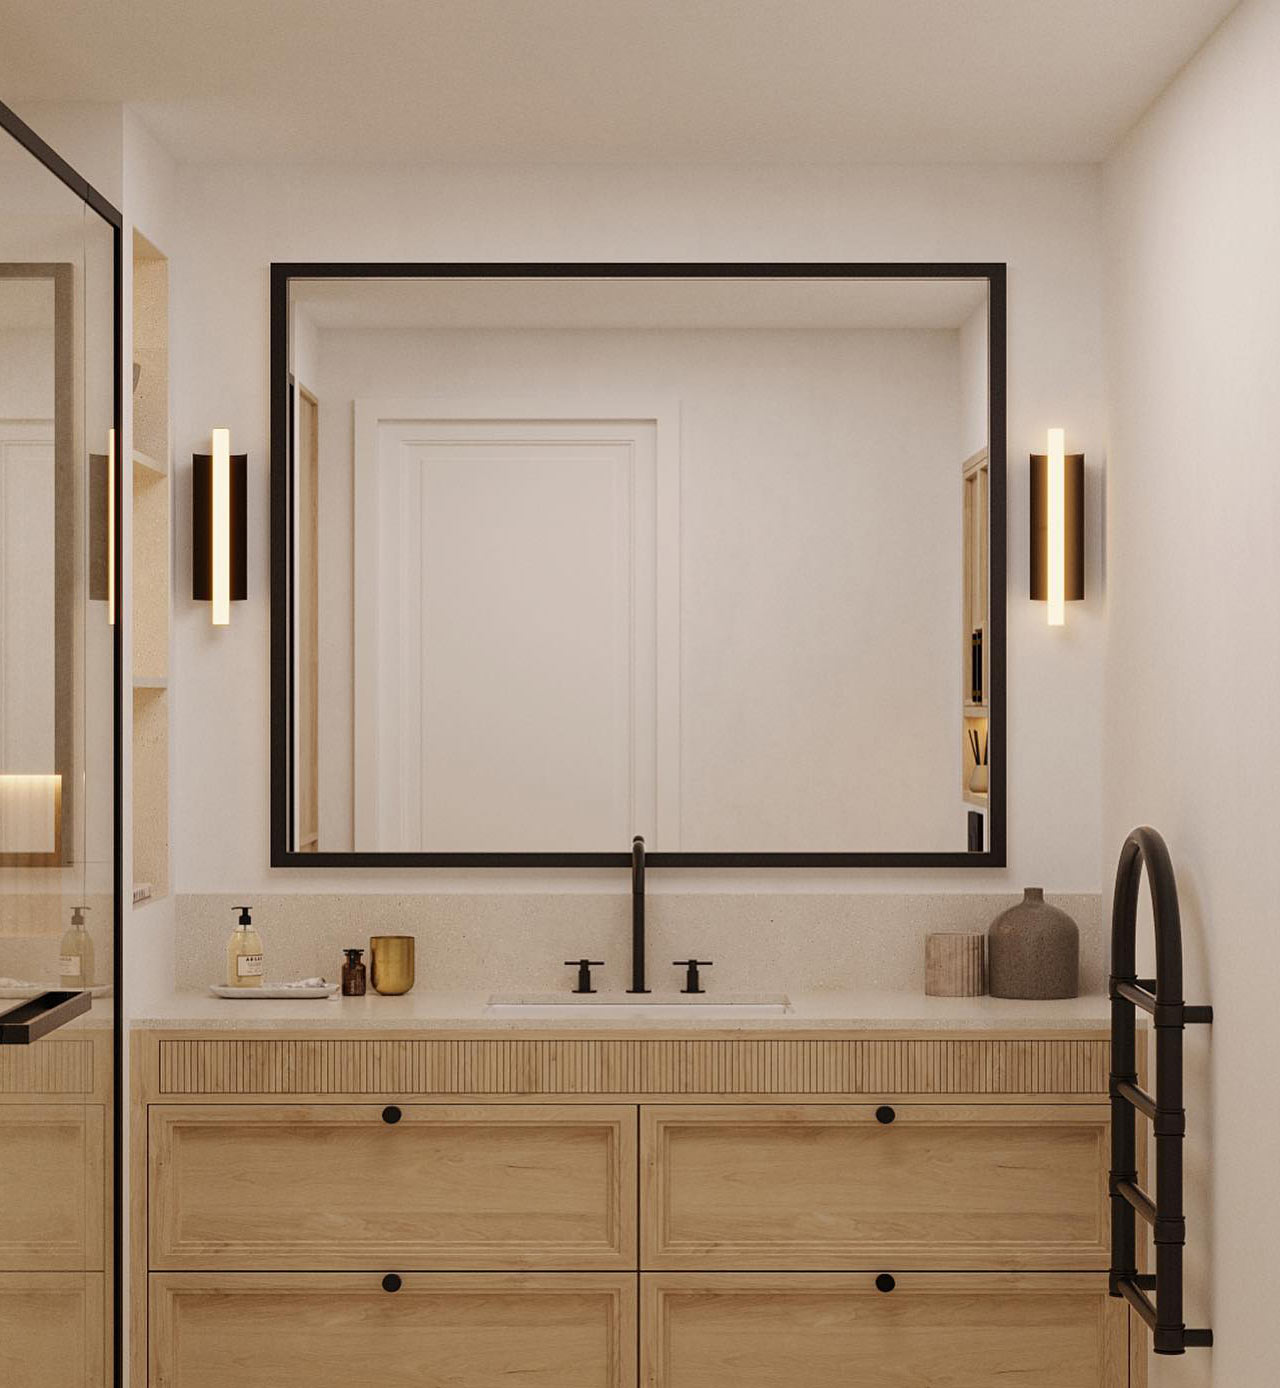 Bathroom with matching vanity light fixtures